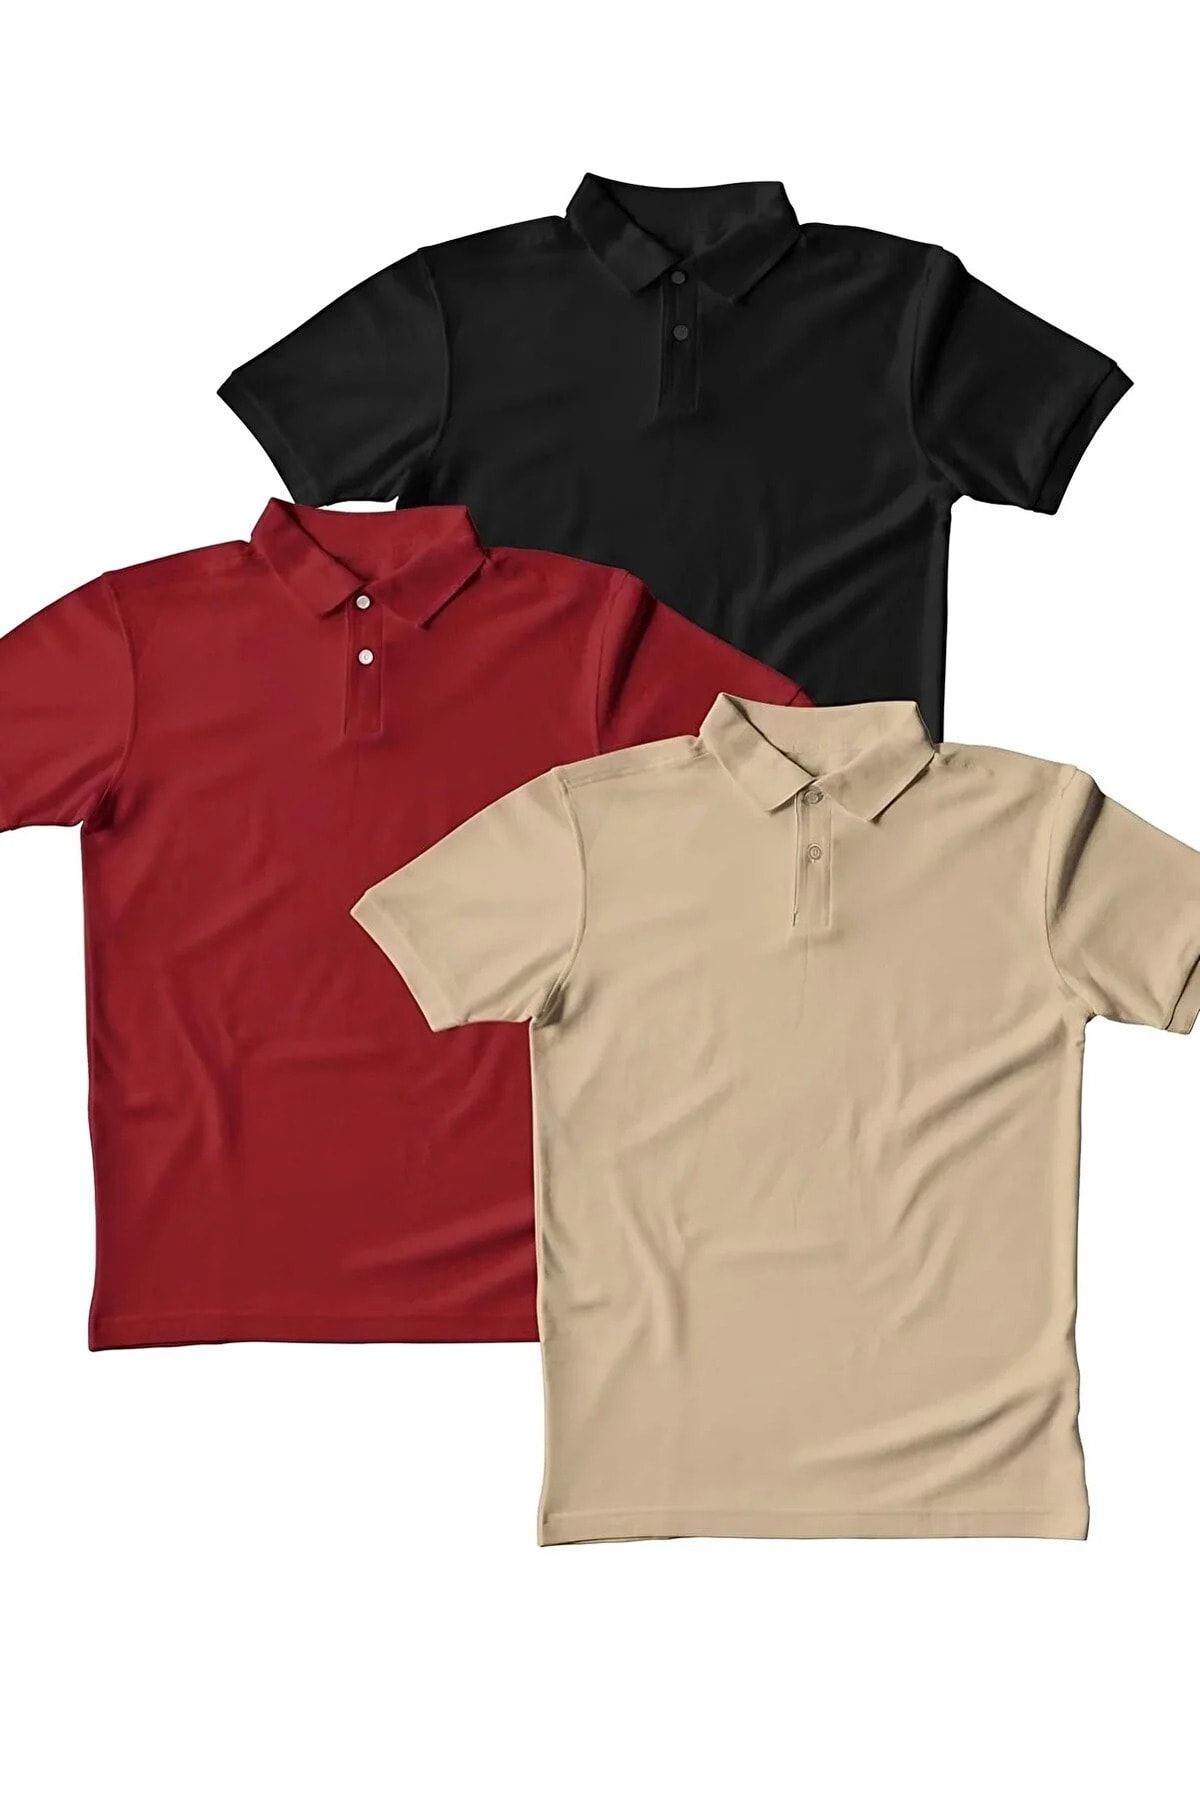 EKZMODA Erkek 3'lü Set Polo Yaka Kısa Kollu Yazlık T-shirt